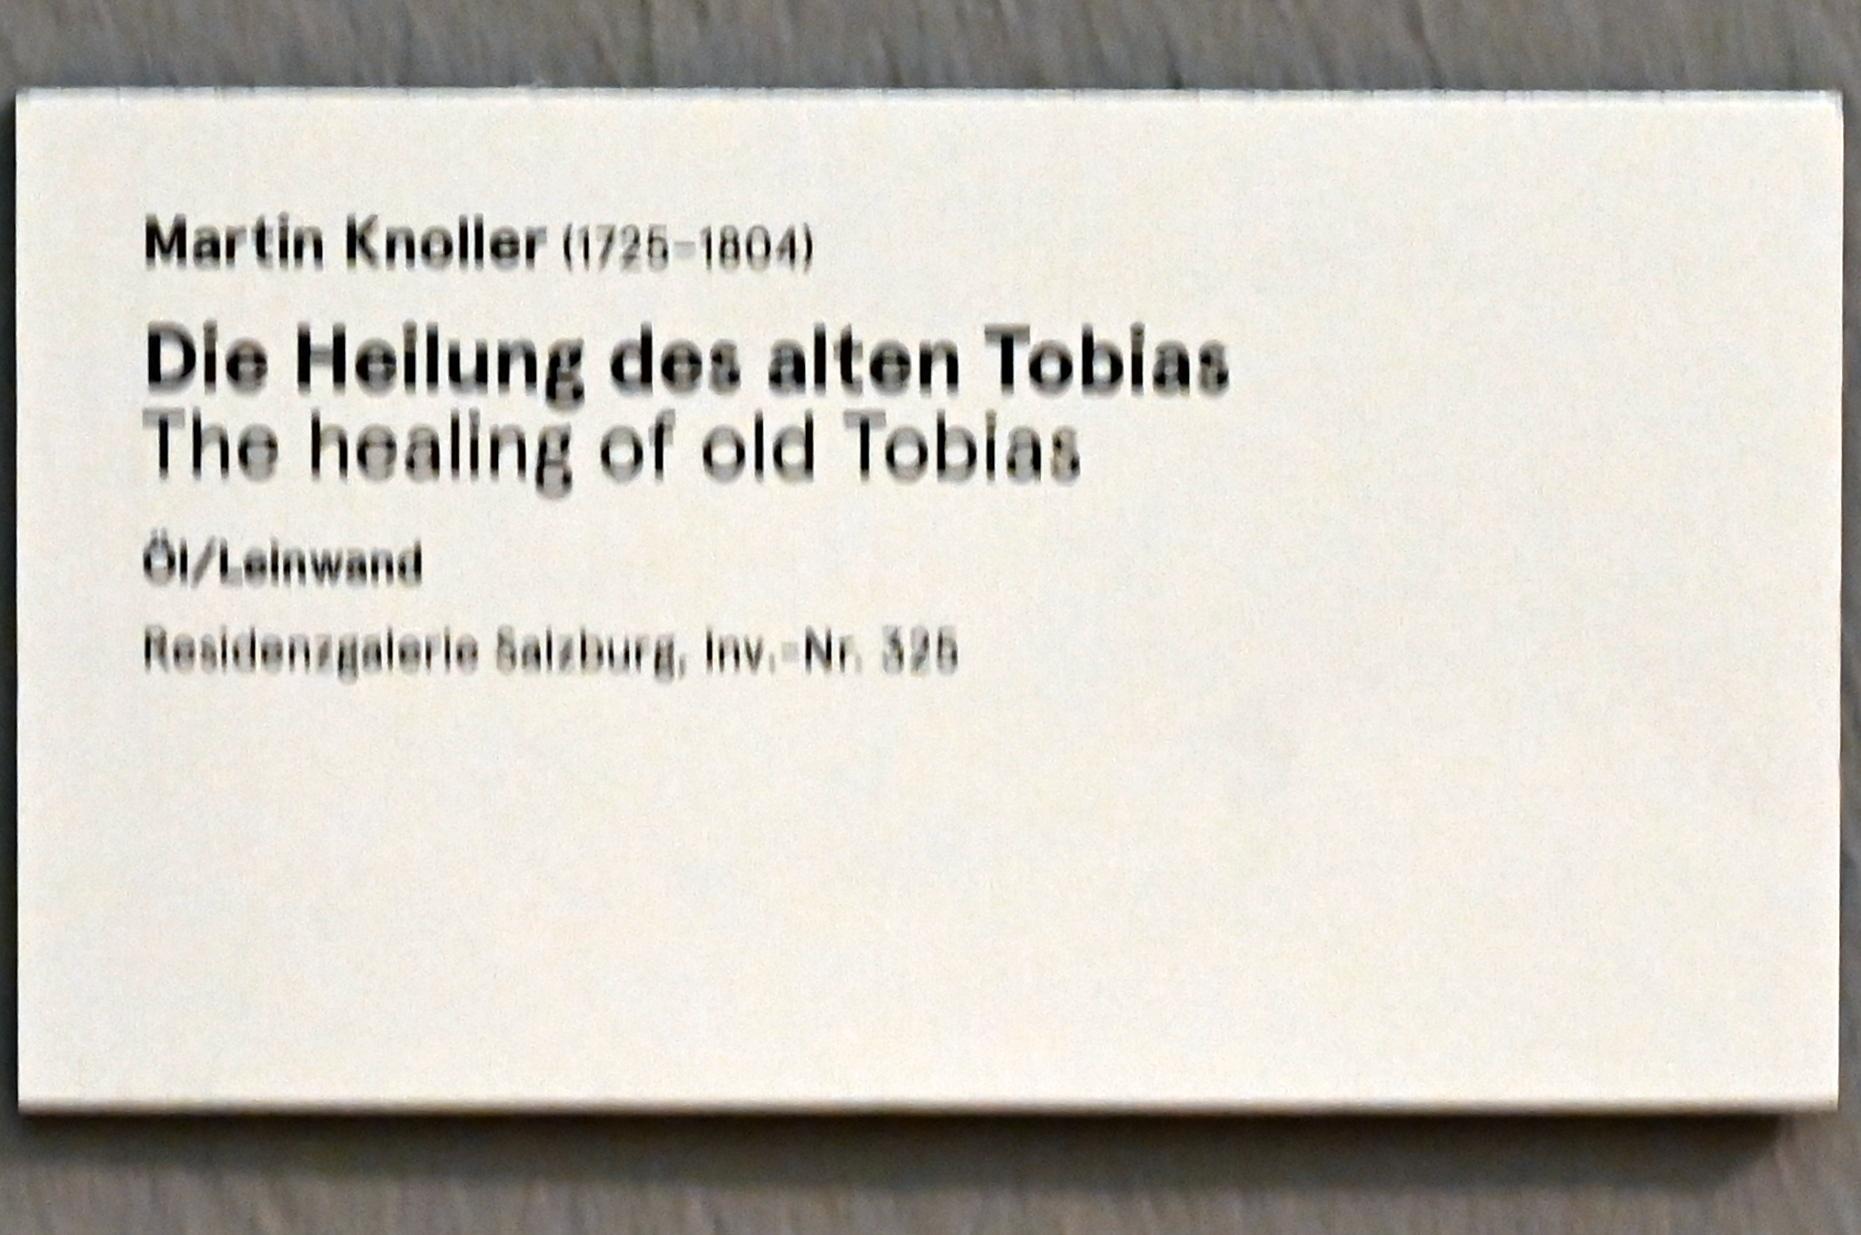 Martin Knoller (1753–1804), Die Heilung des alten Tobias, Wien, Akademie der bildenden Künste, jetzt Salzburg, Salzburger Residenz, Residenzgalerie, 1753, Bild 3/3